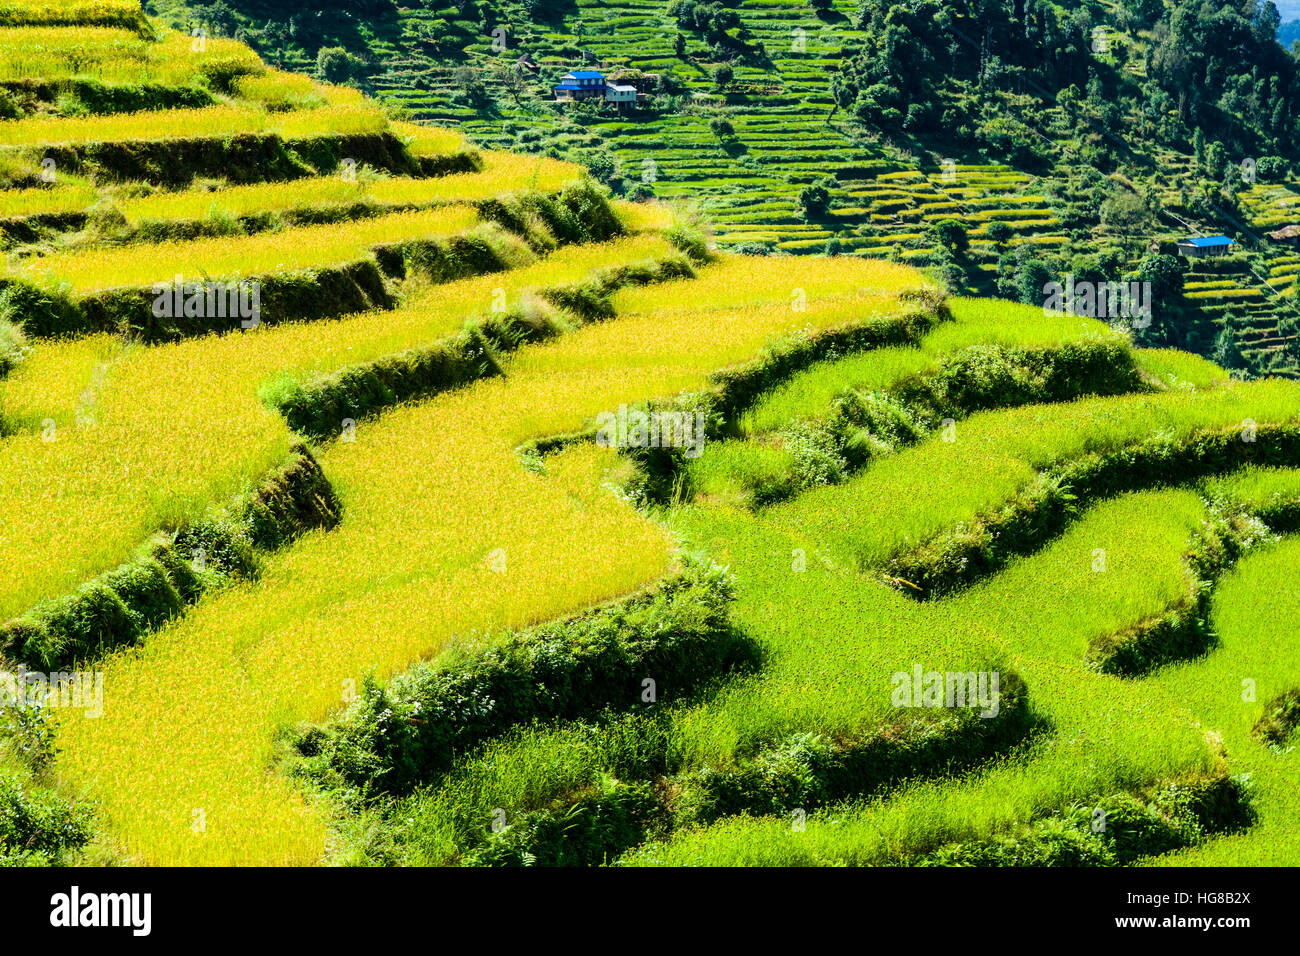 Paysage agricole vert, rizières en terrasses et les champs d'orge dans la vallée de la modi Khola, Landruk, district de Kaski, Népal Banque D'Images